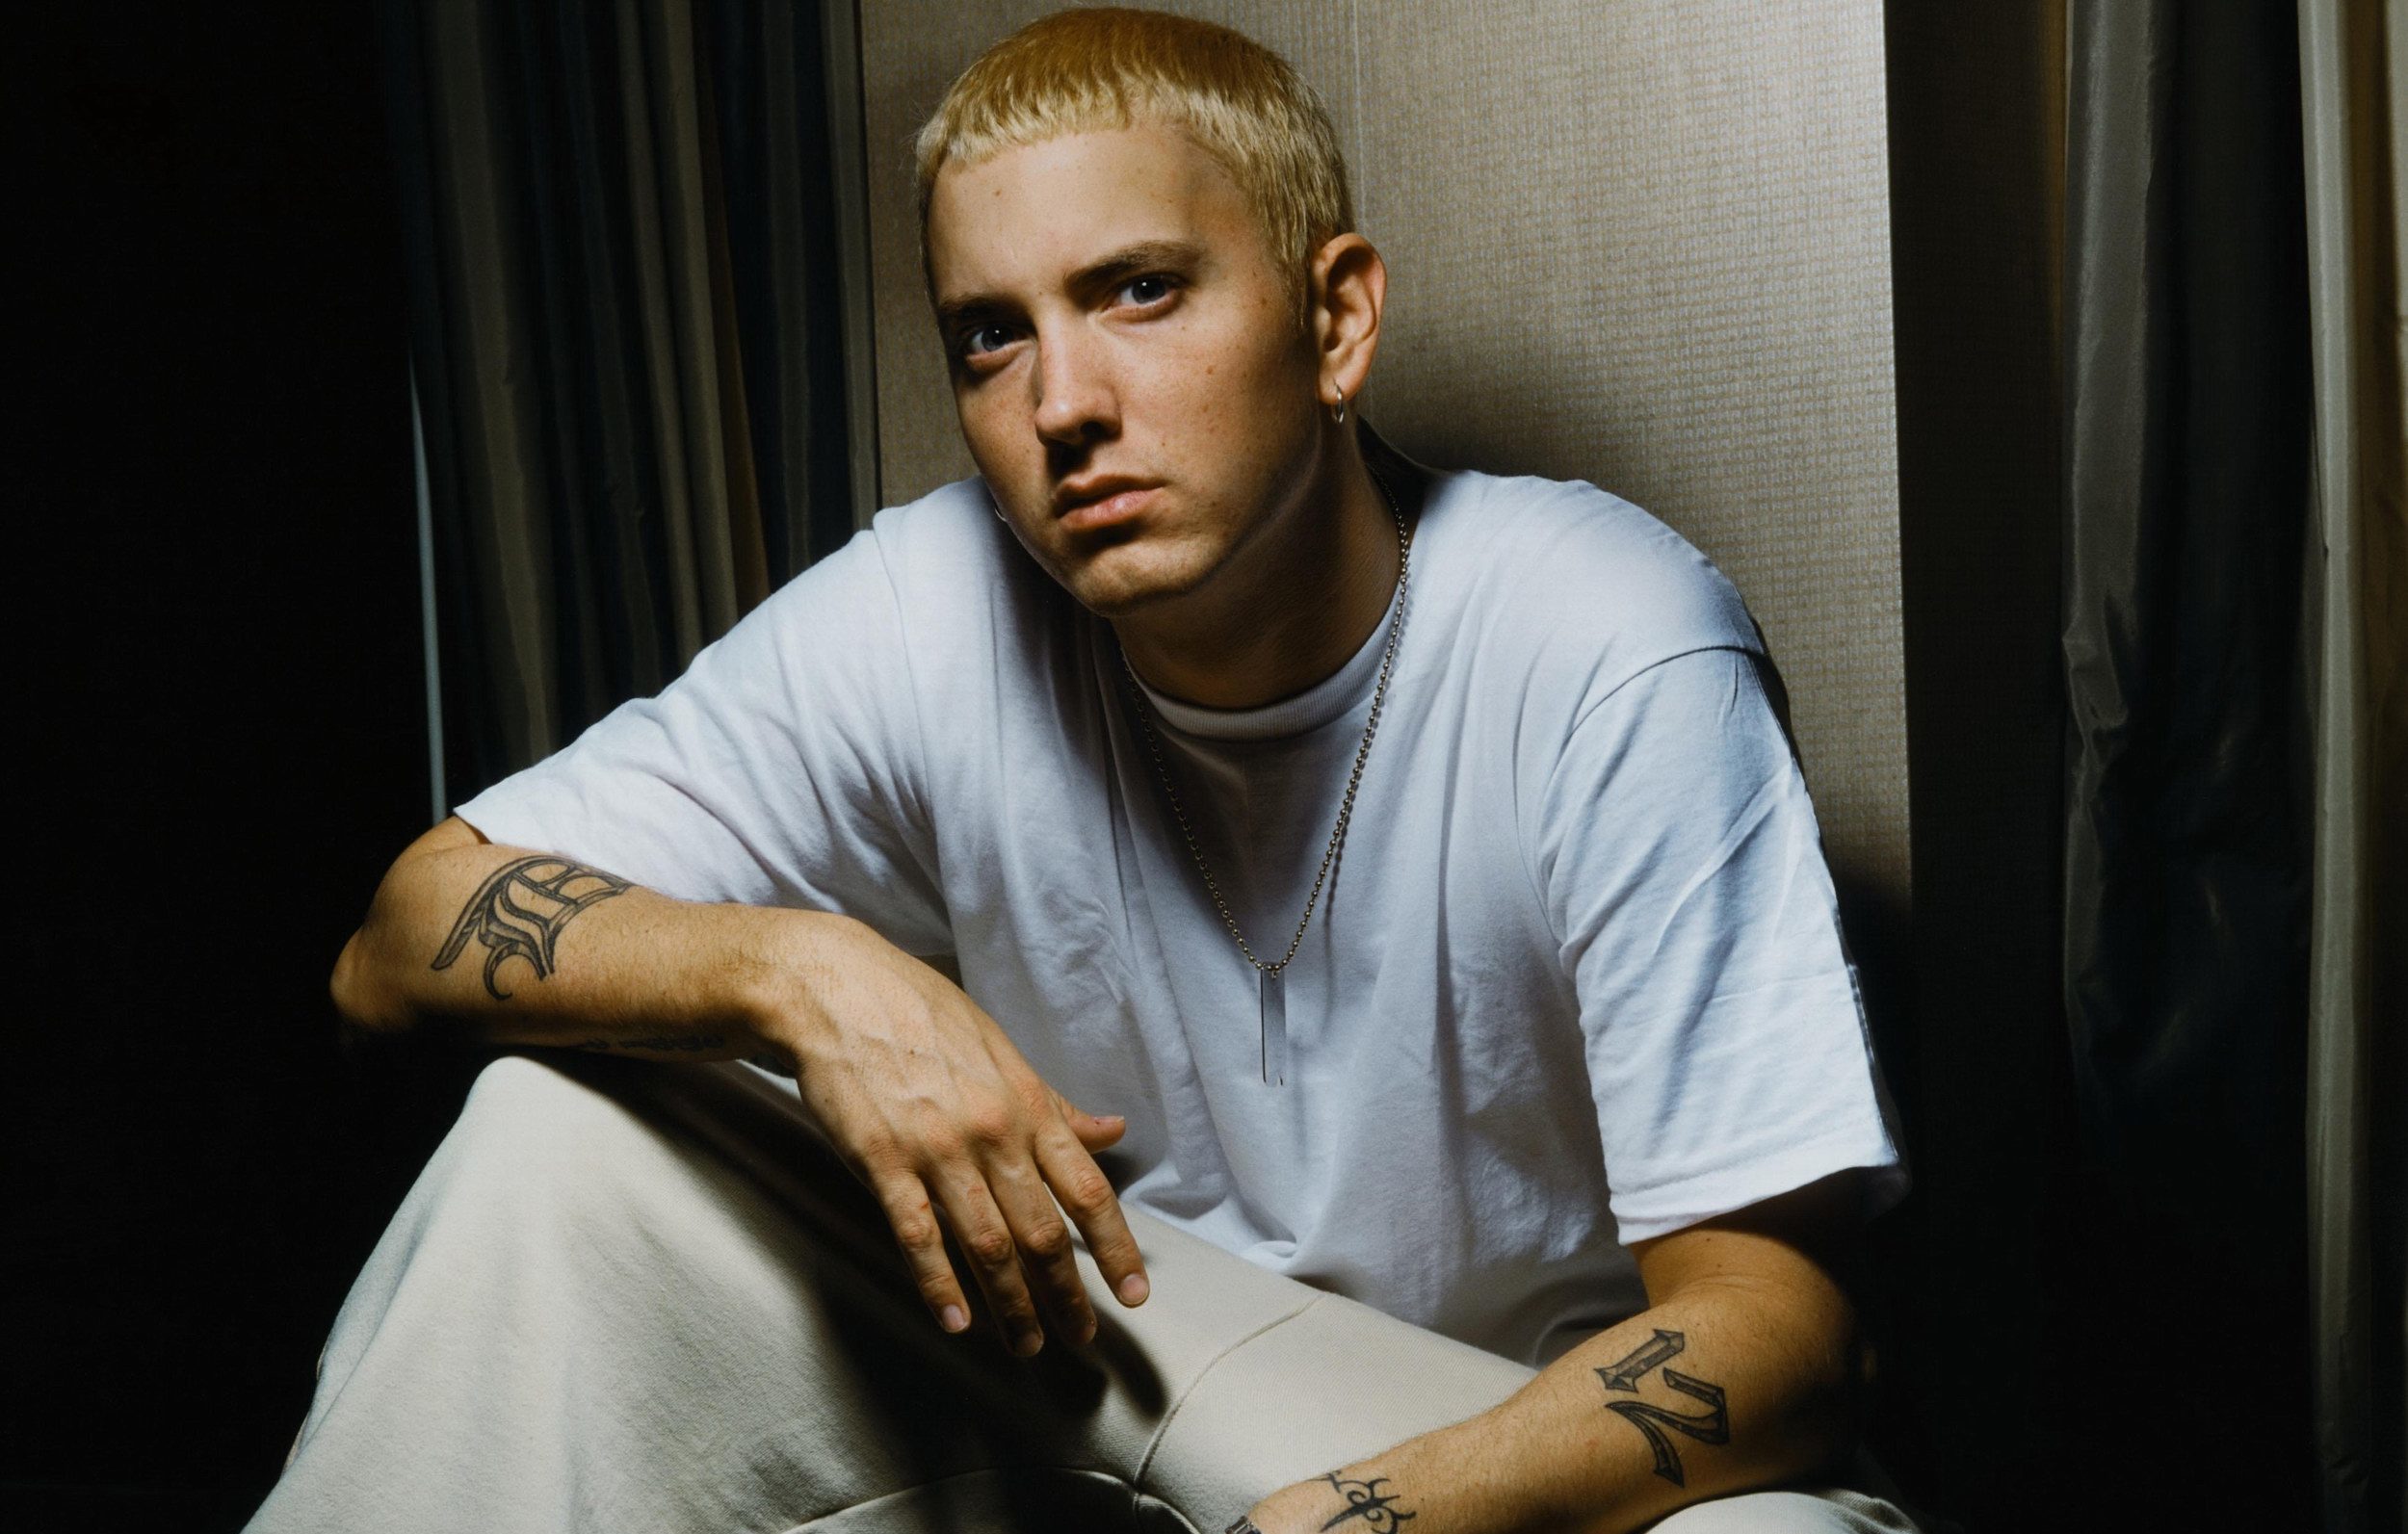 Eminem festeggia undici anni di sobrietà con la foto della medaglia: “Ancora senza paura”